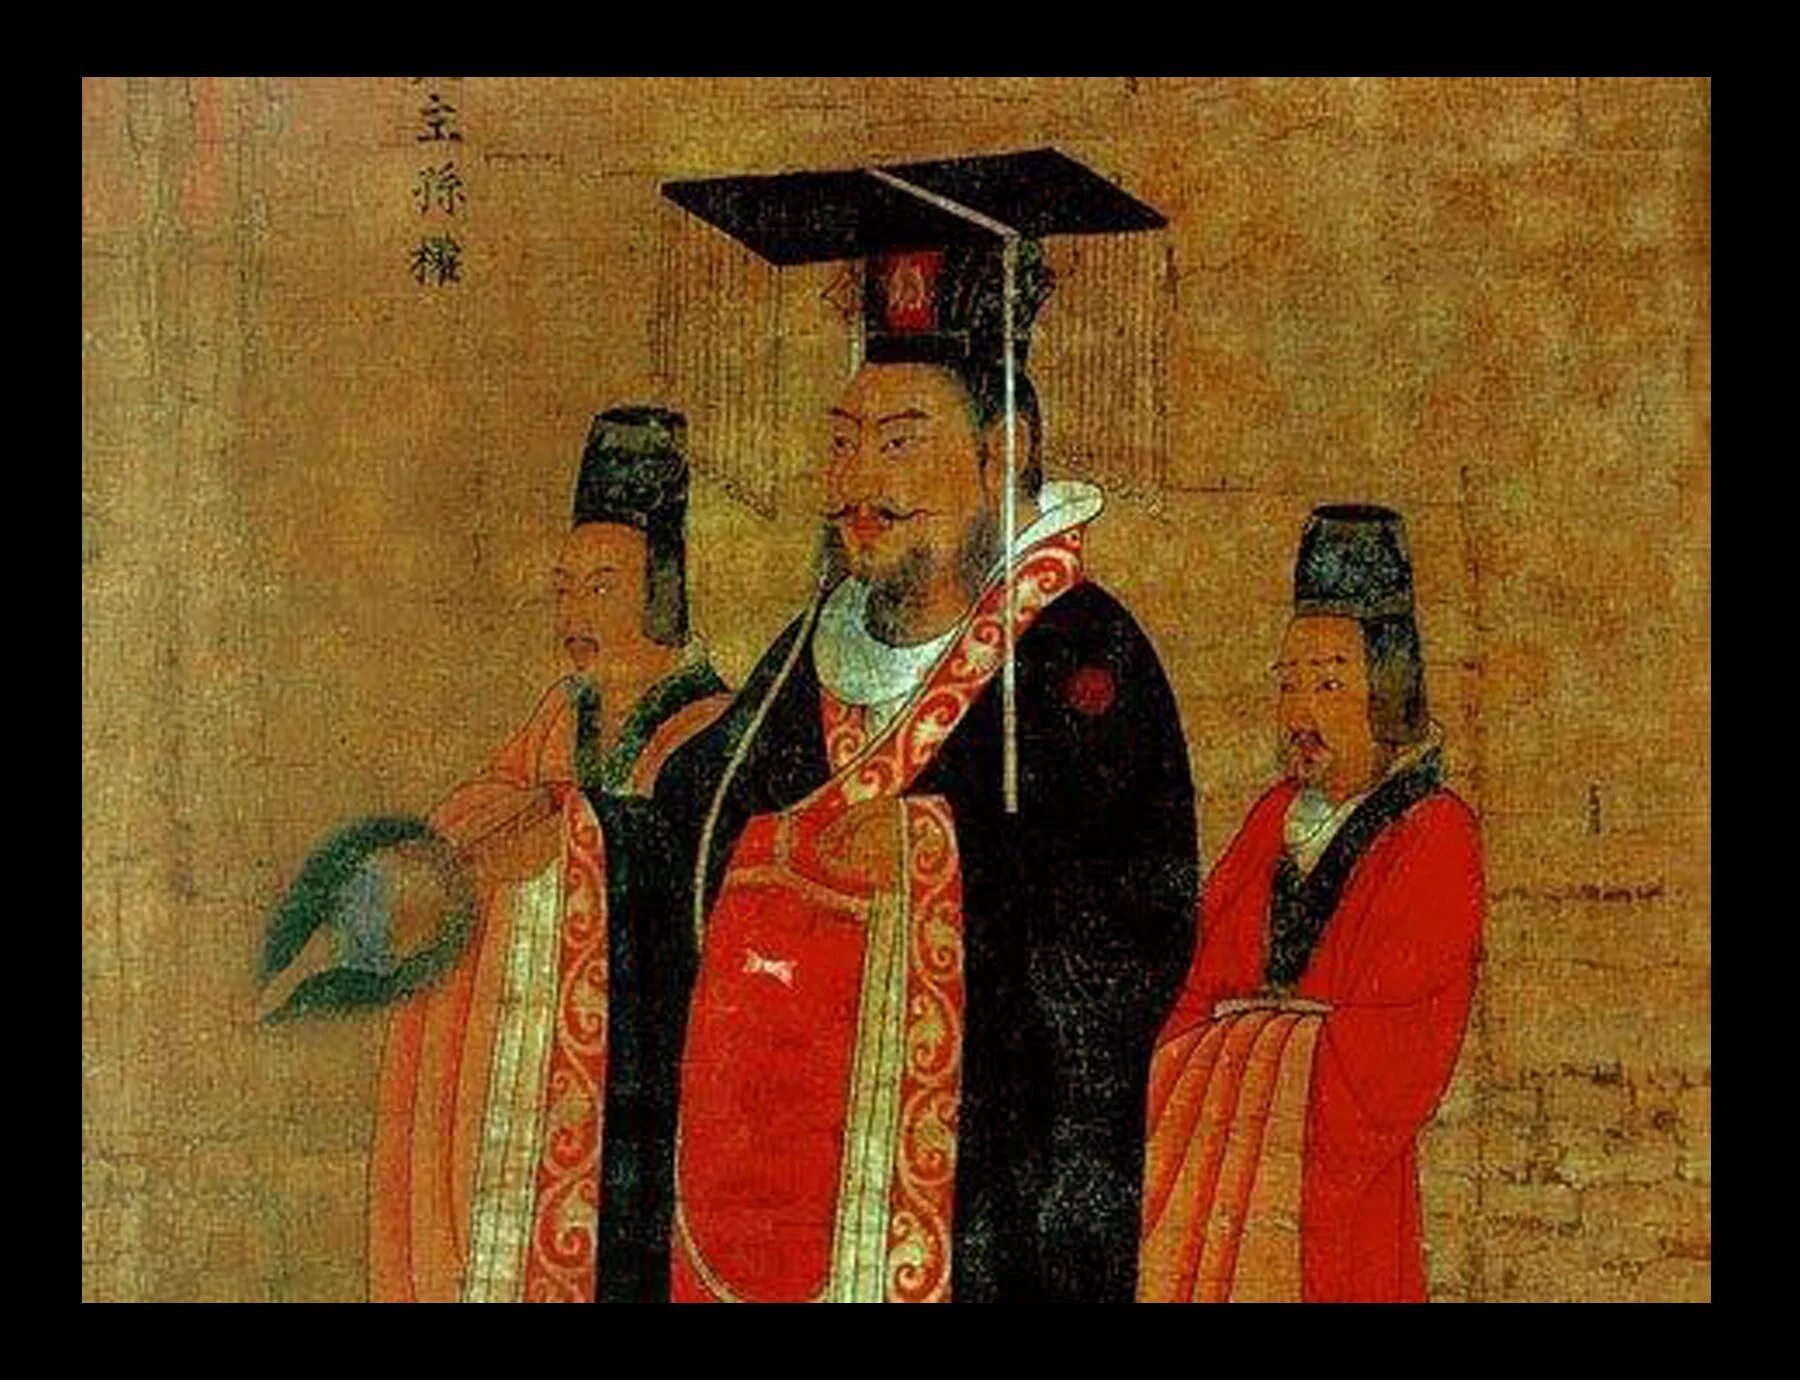 Тан и сун. Династия Тан и Сун в Китае. Гао-Цзун (Династия Сун). Правление династий Тан и Сун в Китае. Династия Сун Чжао Куанъинь.